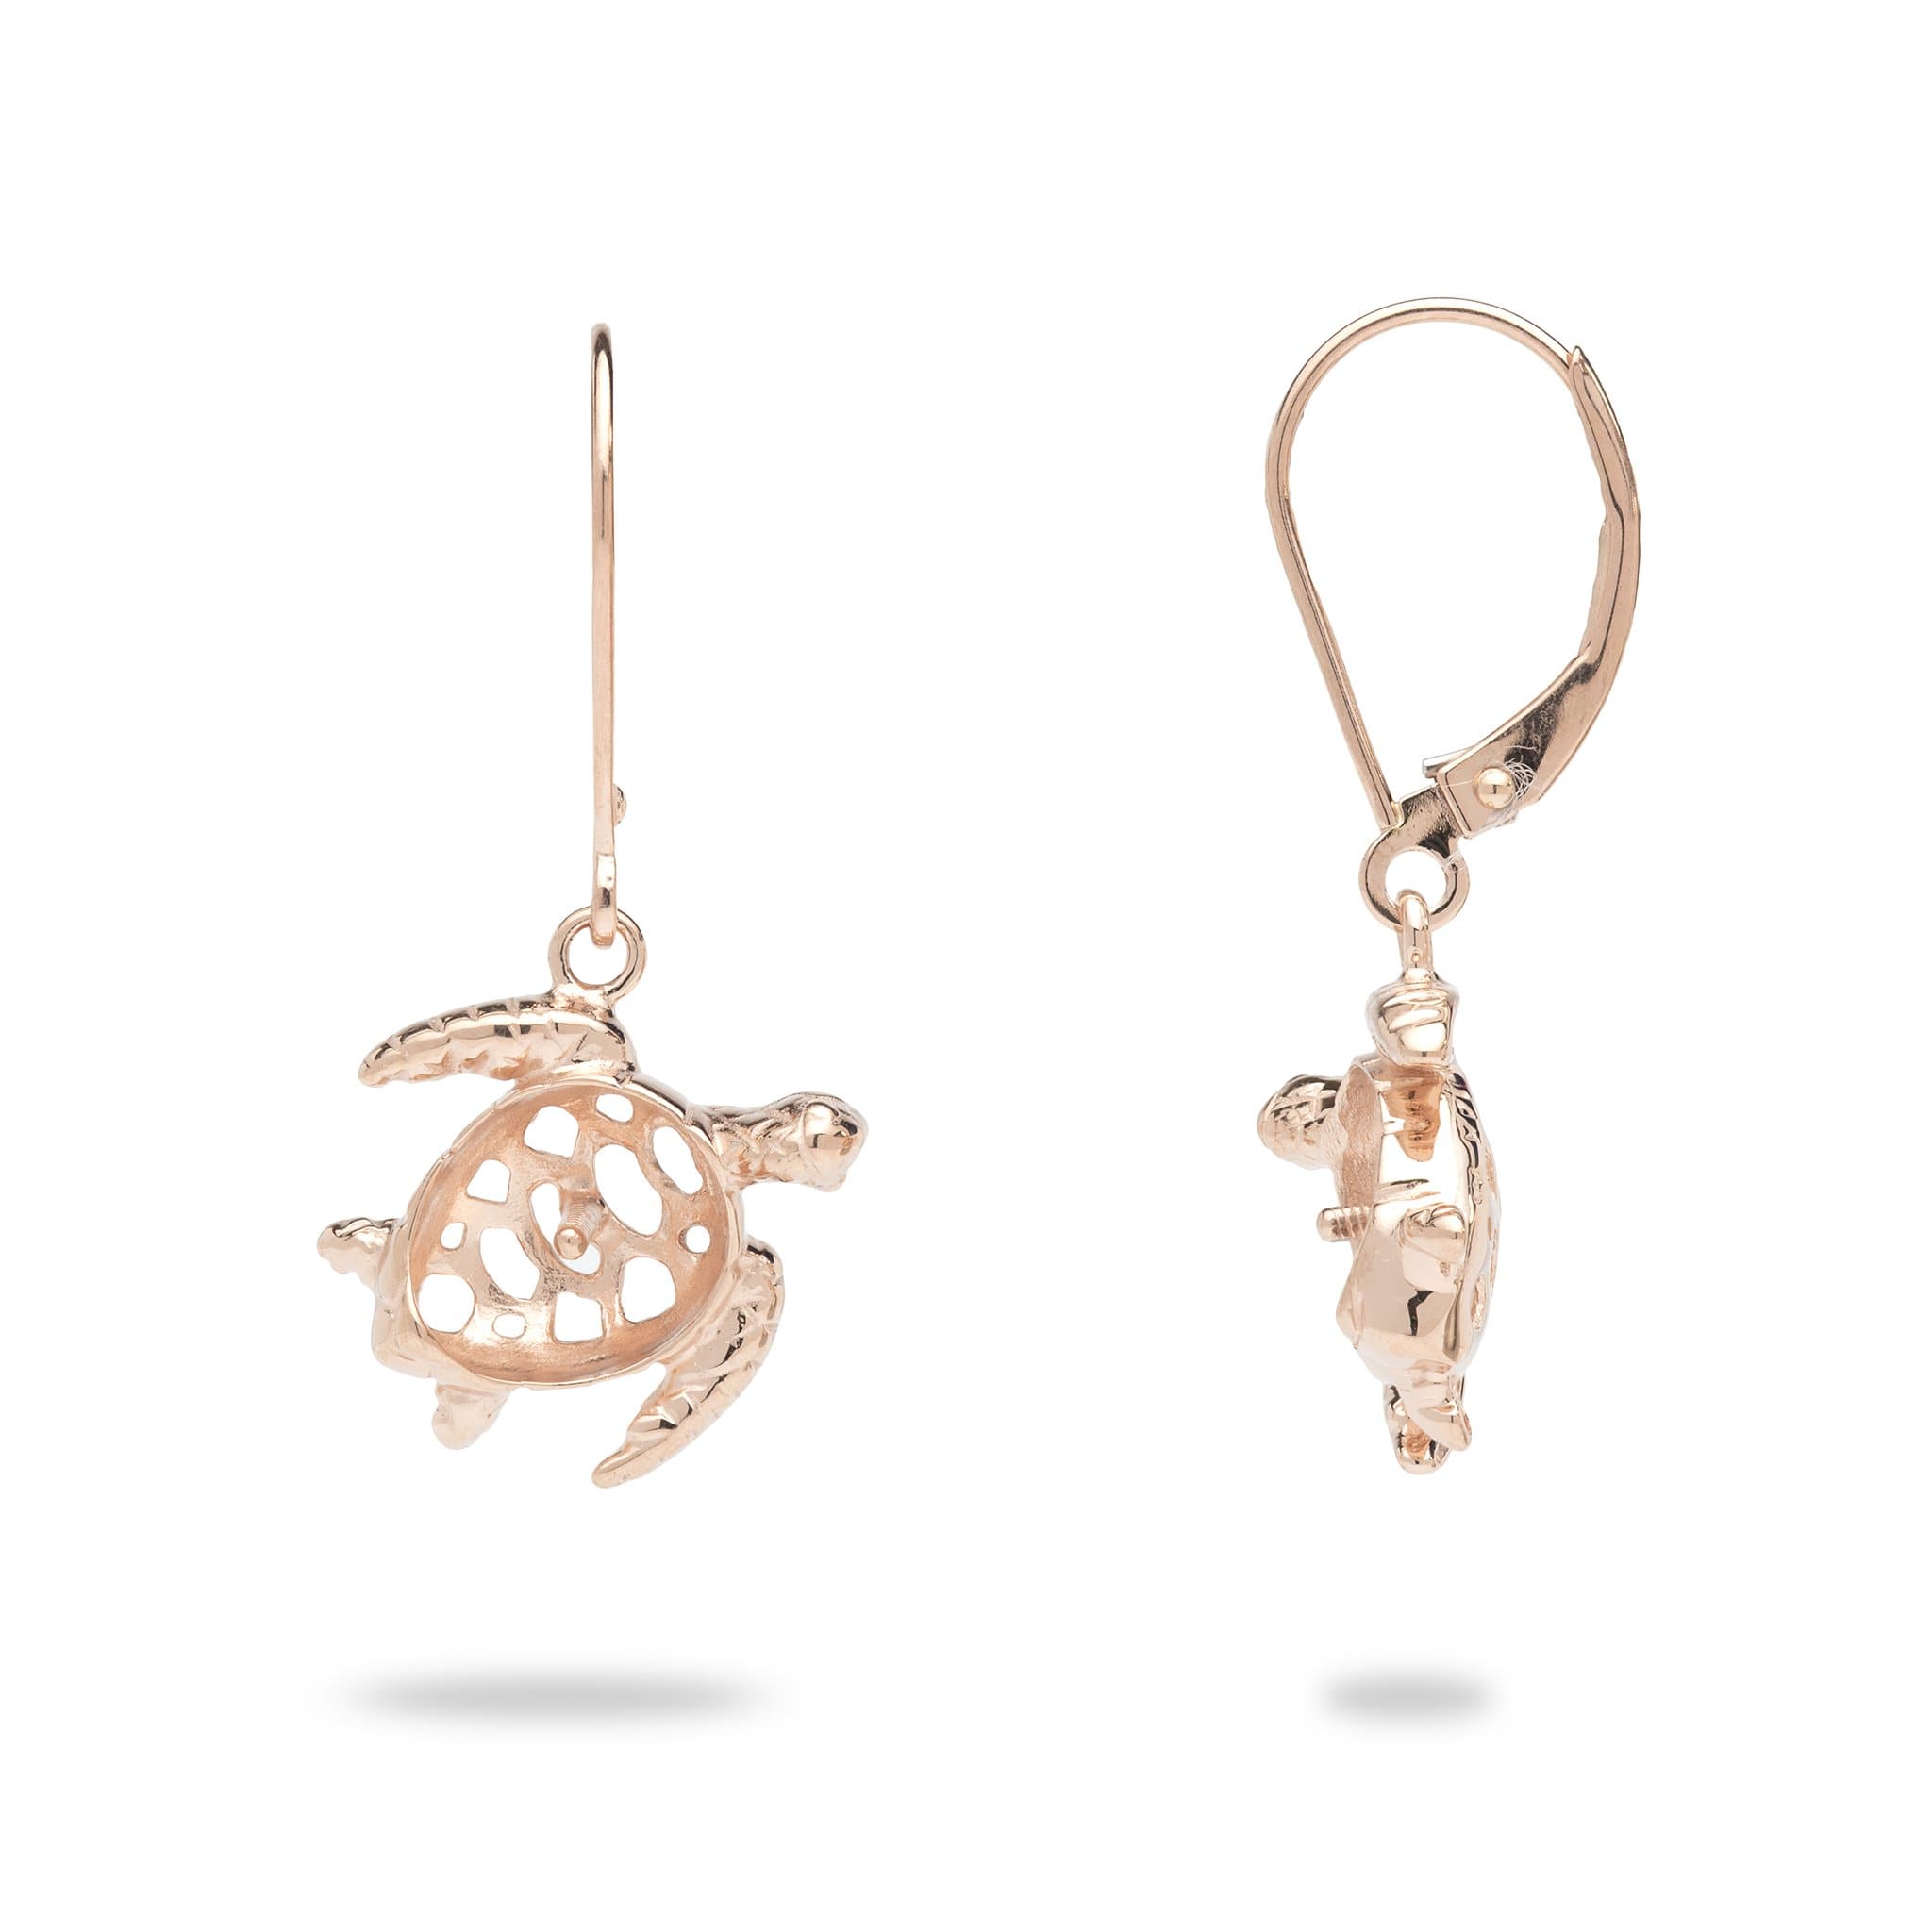 Honu (Turtle) Earring Mountings in 14k Rose Gold 076-06143